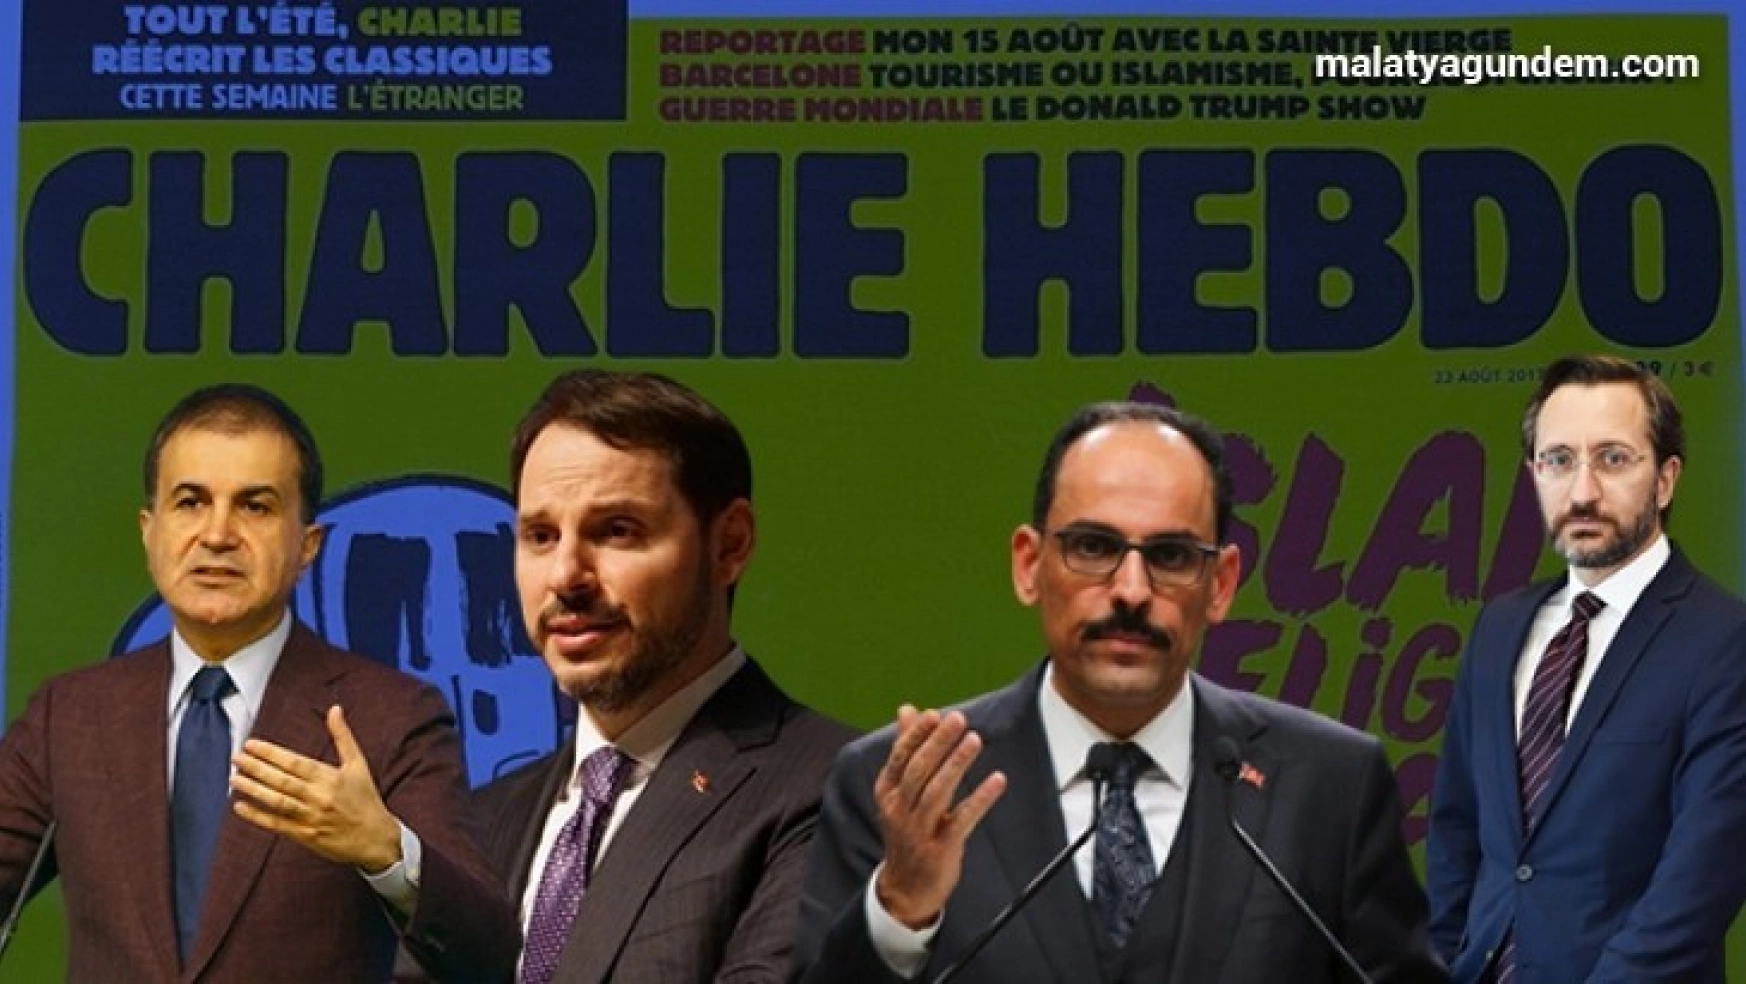 Türkiye'den Charlie Hebdo'nun karikatürüne sert tepki